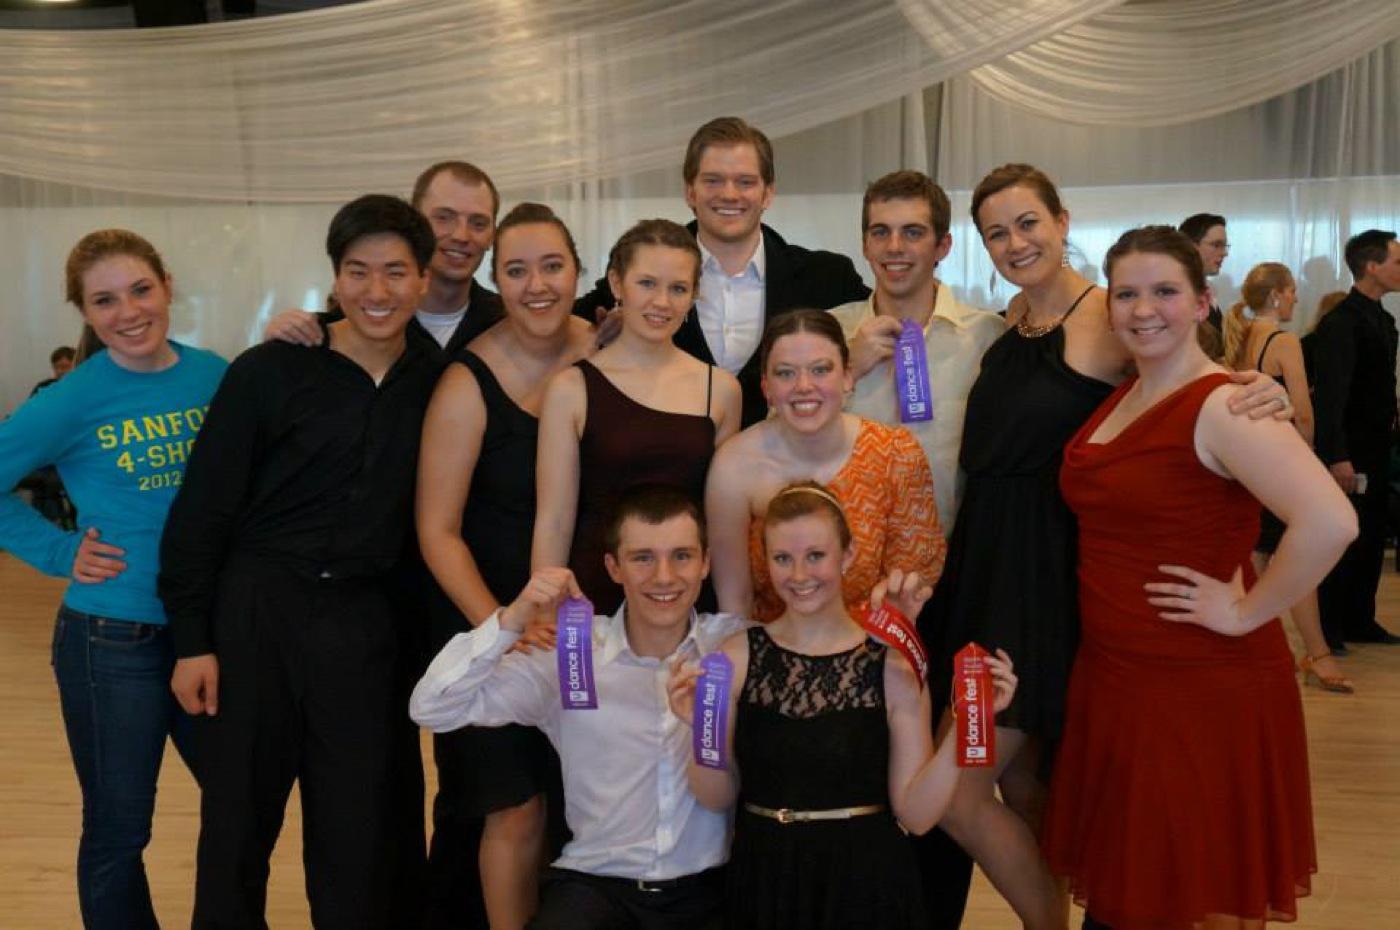 La Crosse's ballroom team